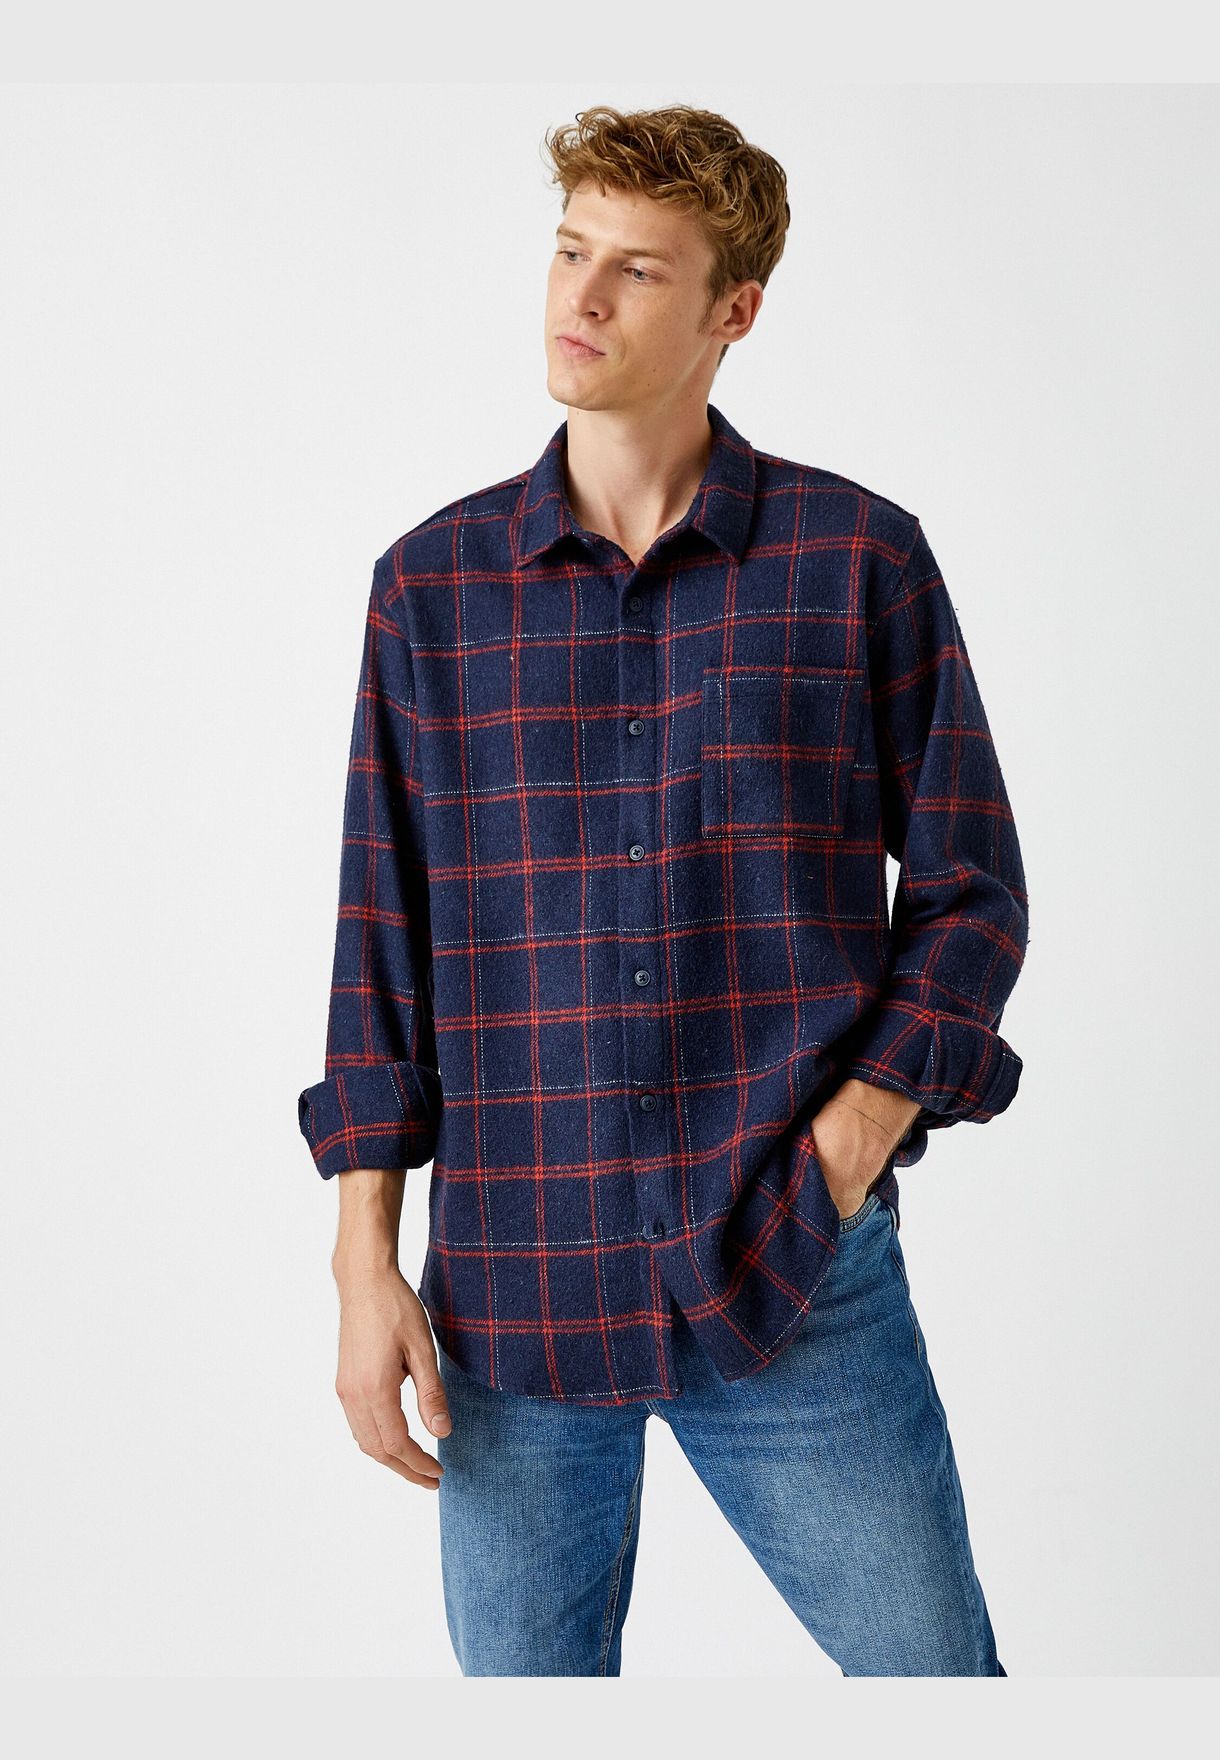 Lumberjack Shirt Pocketed